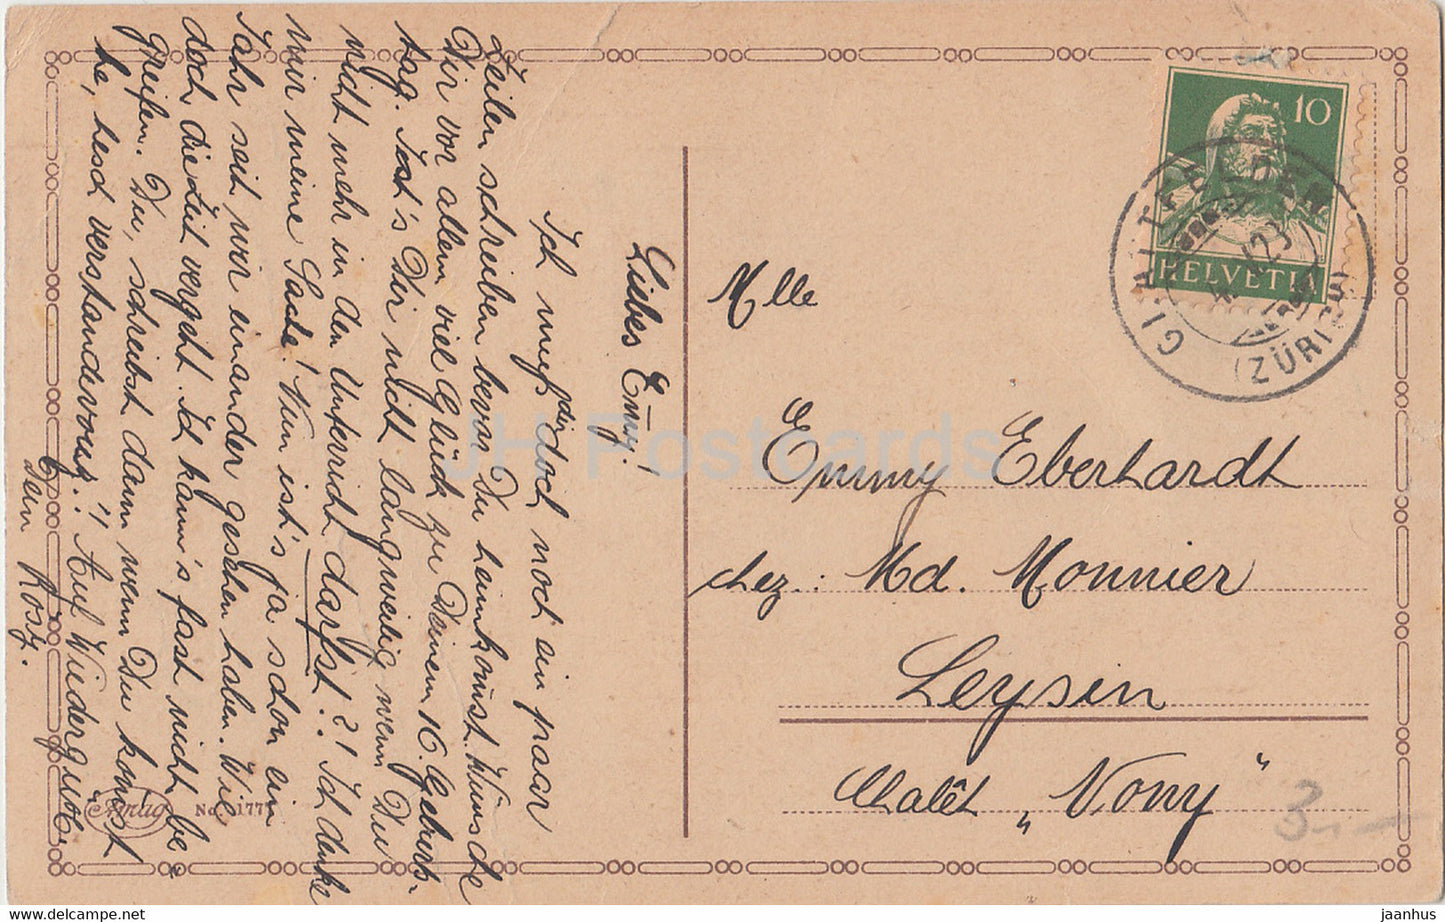 Geburtstagsgrußkarte - Herzlichen Glückwunsch zum Geburtstage - Mädchen - Amag 1777 - alte Postkarte - 1923 Deutschland - gebraucht